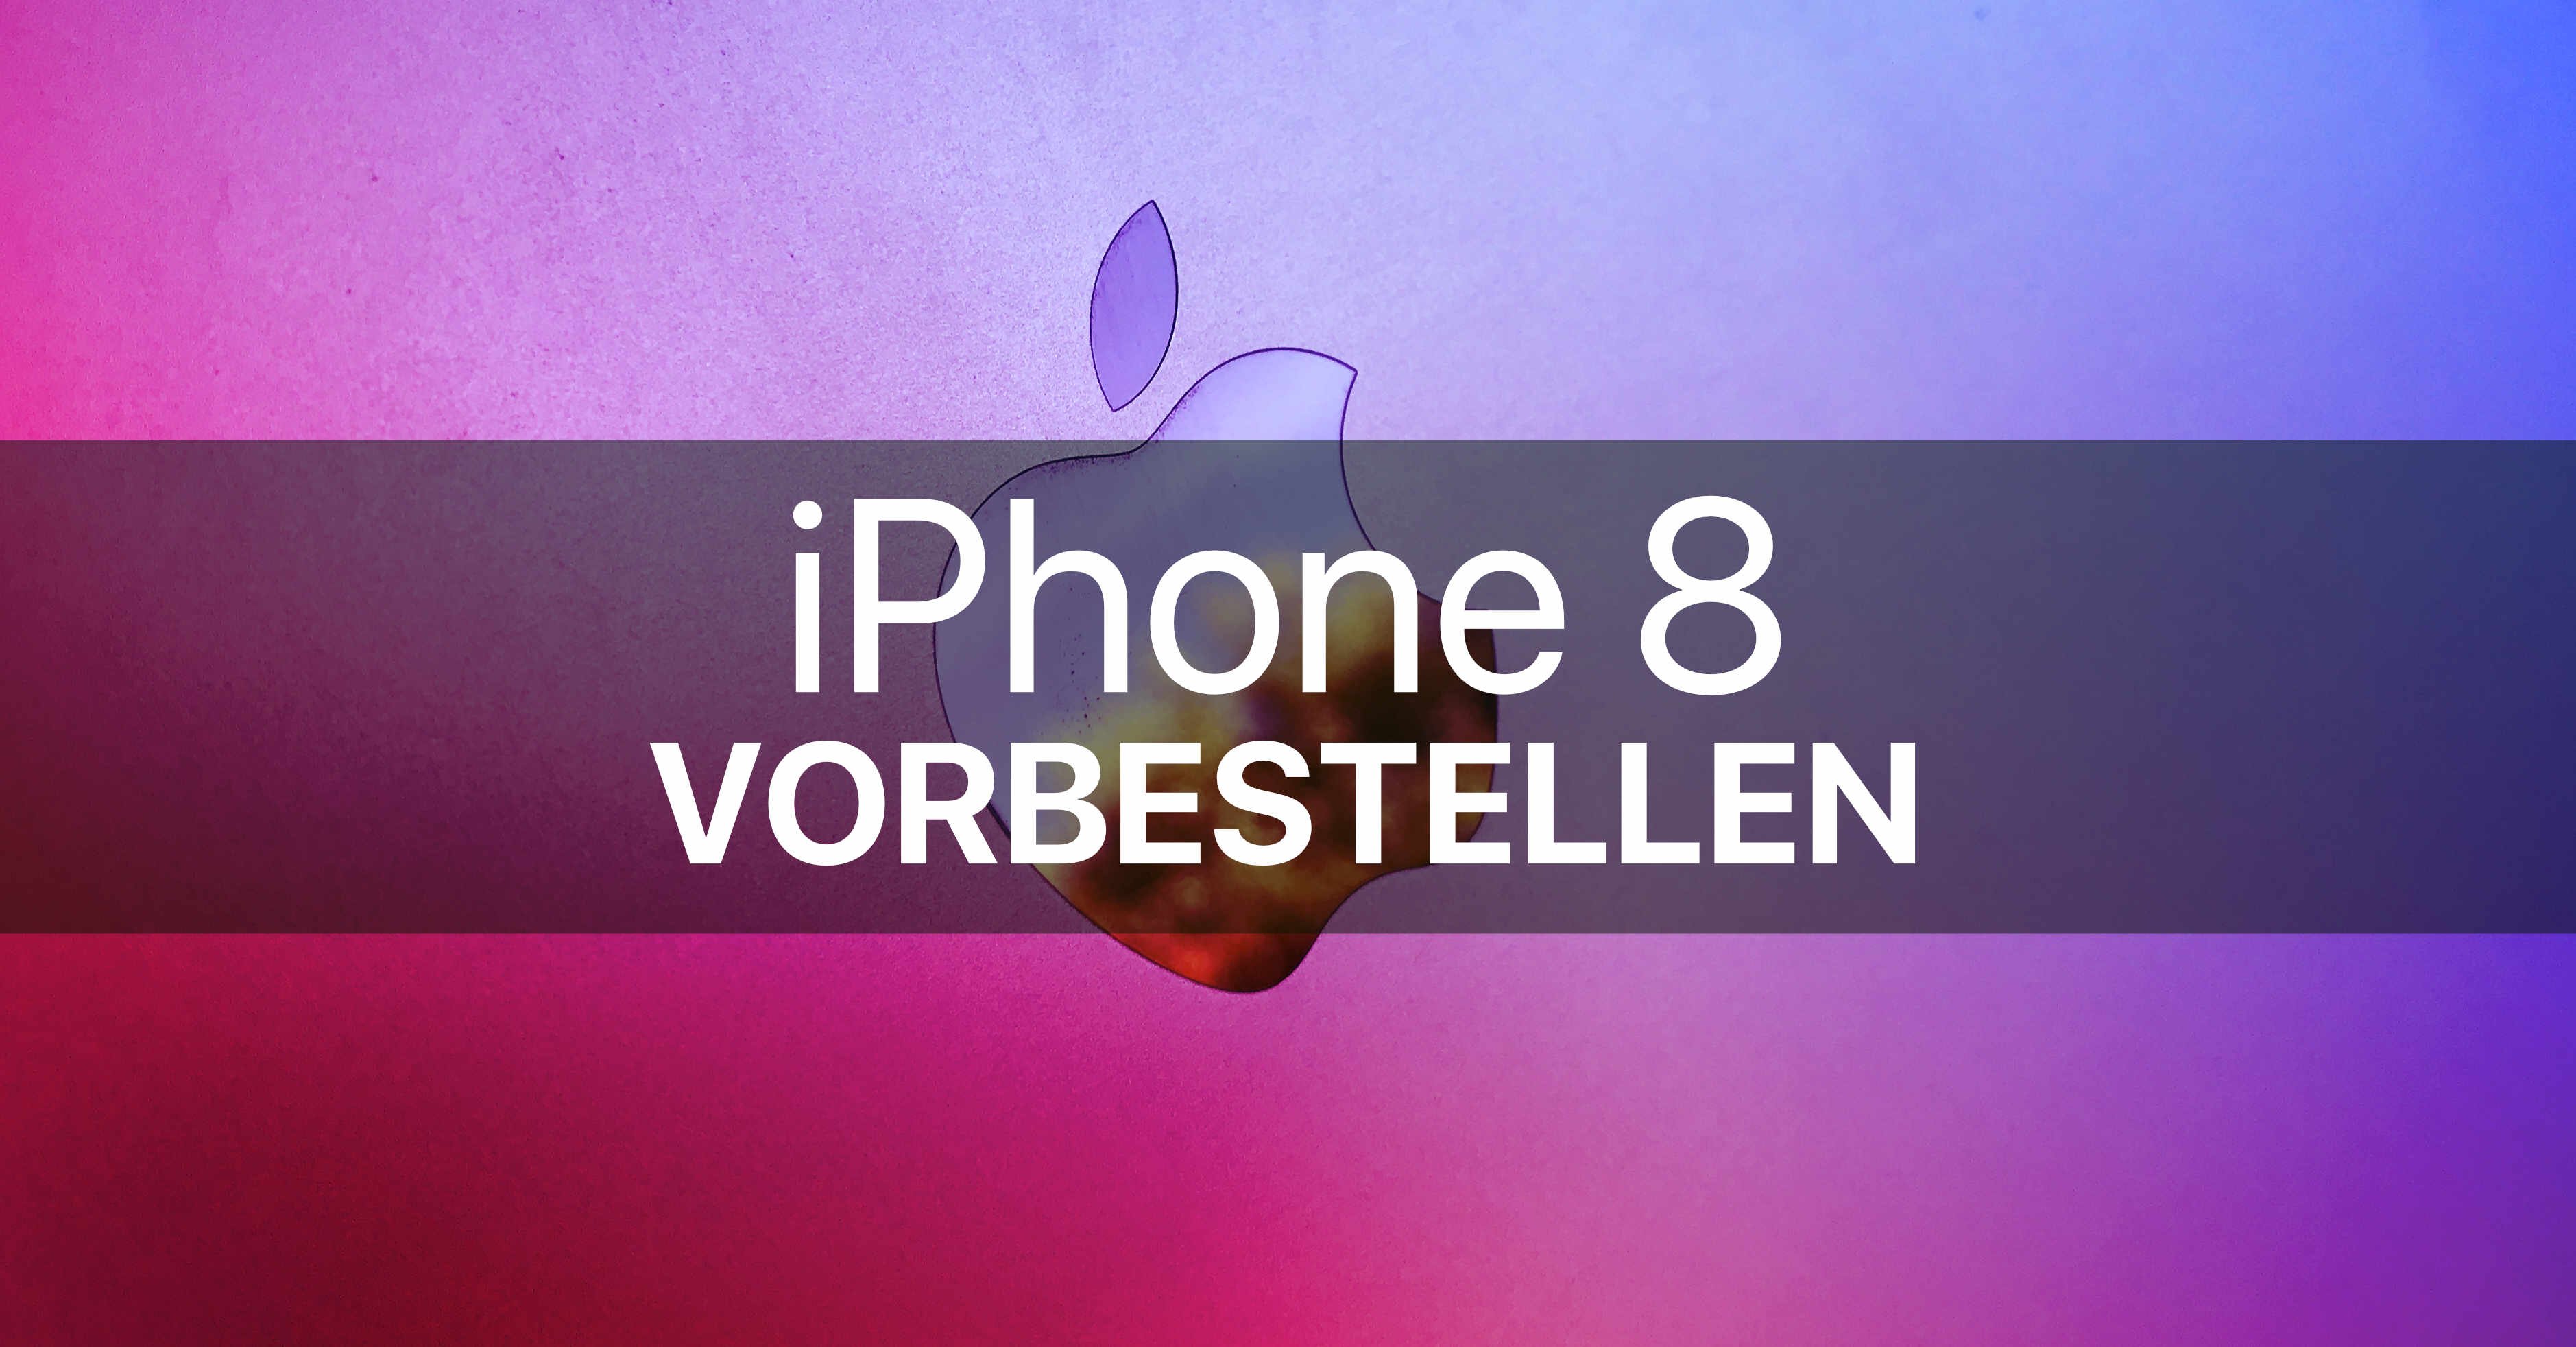 iPhone 8 vorbestellen günstig ohne & mit Vertrag O2, Telekom, Vodafone 1